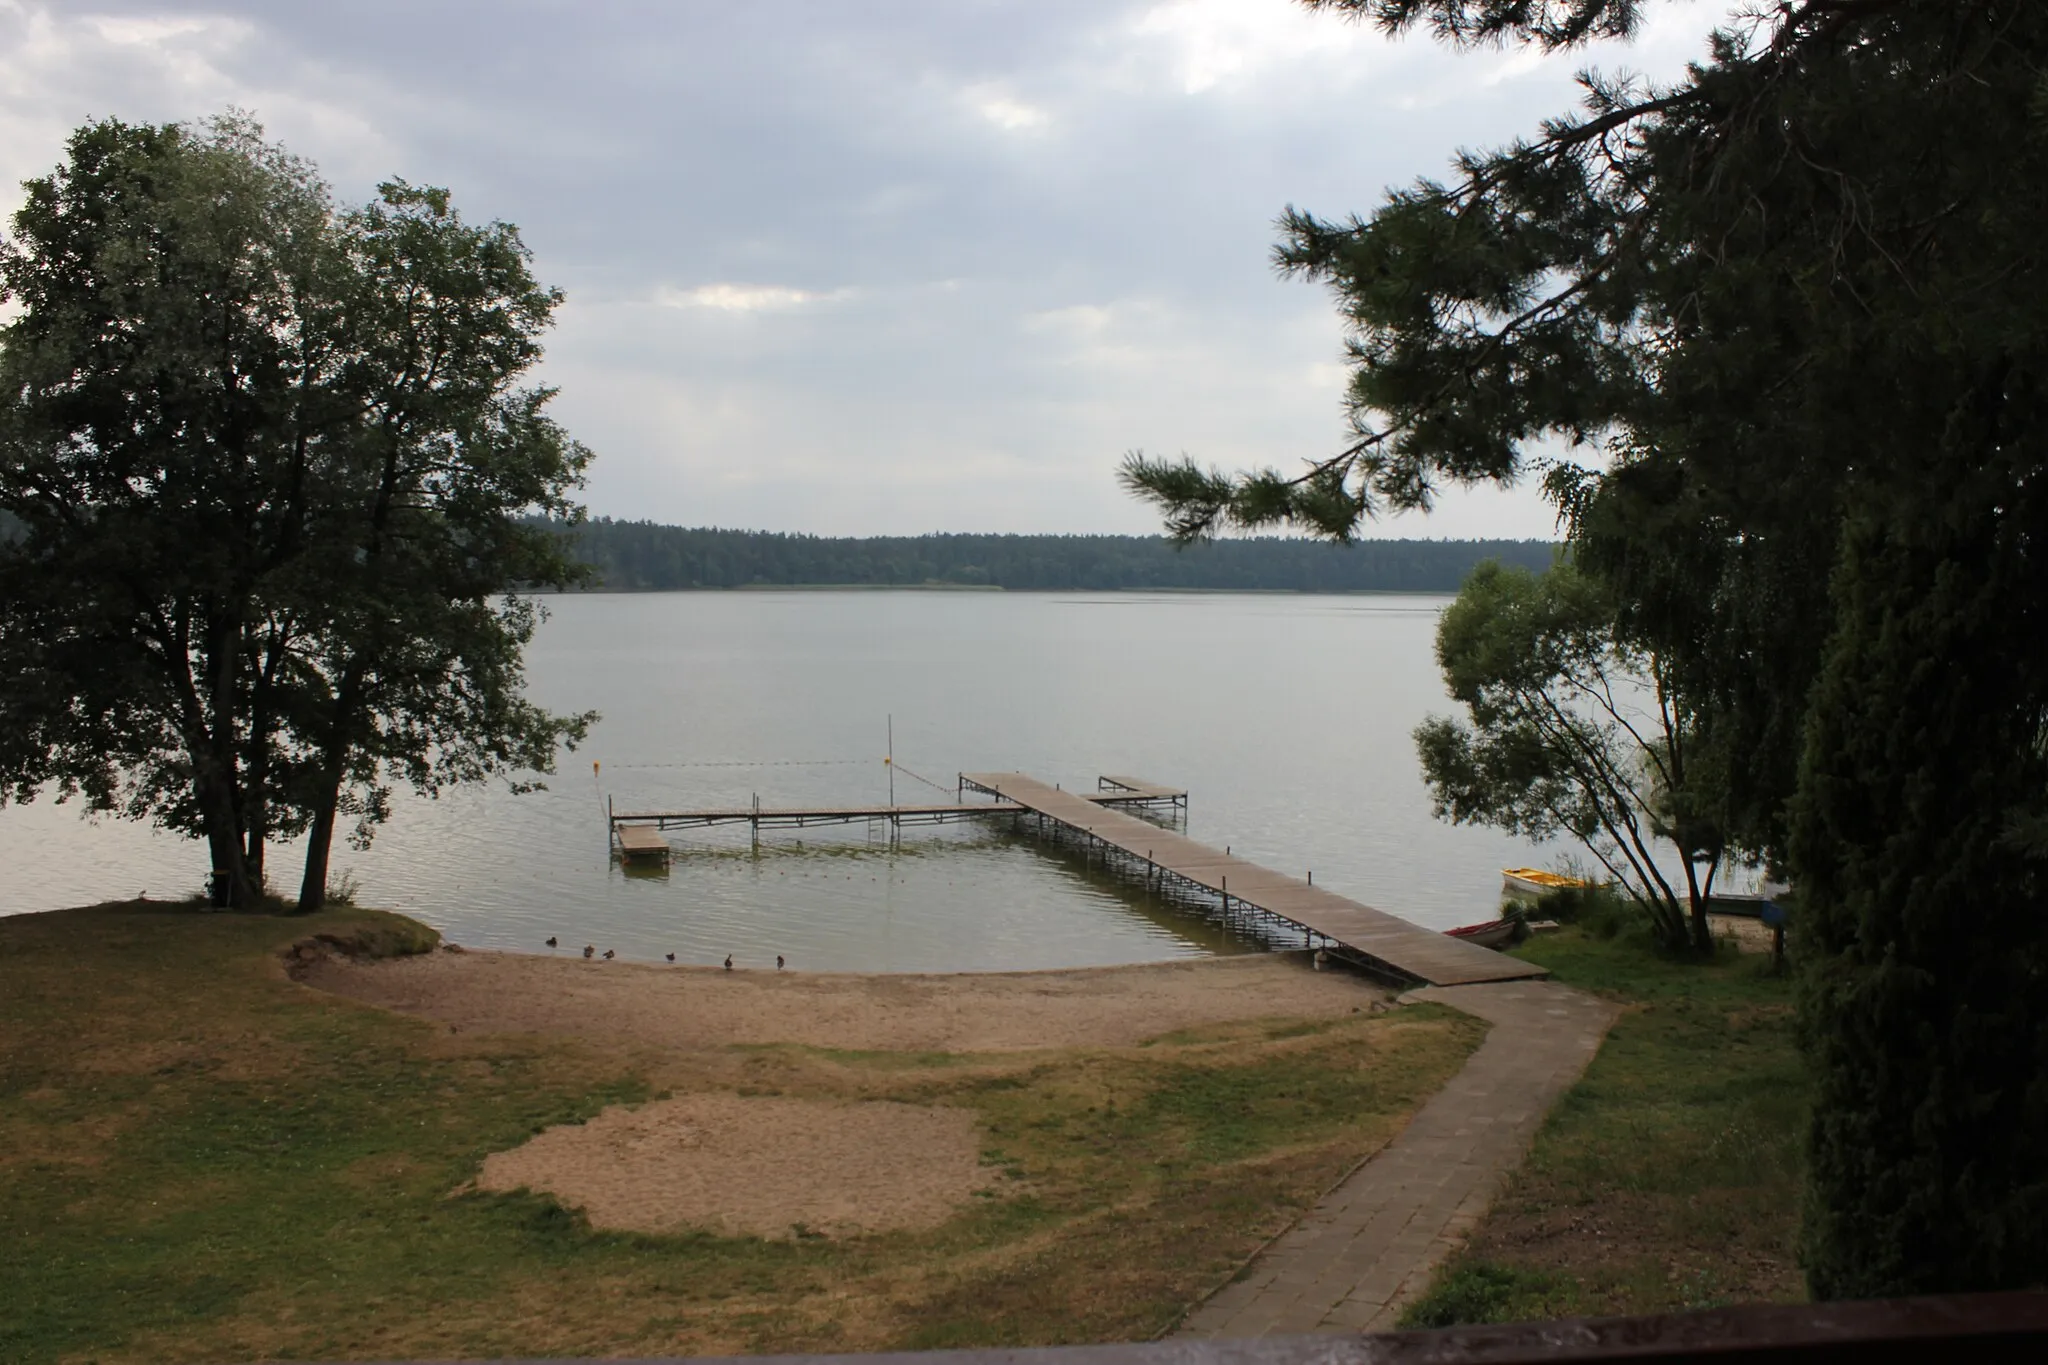 Photo showing: Pomost ośrodka wypoczynkowego "Skowronek" nad jeziorem Sajno w pobliżu Augustowa